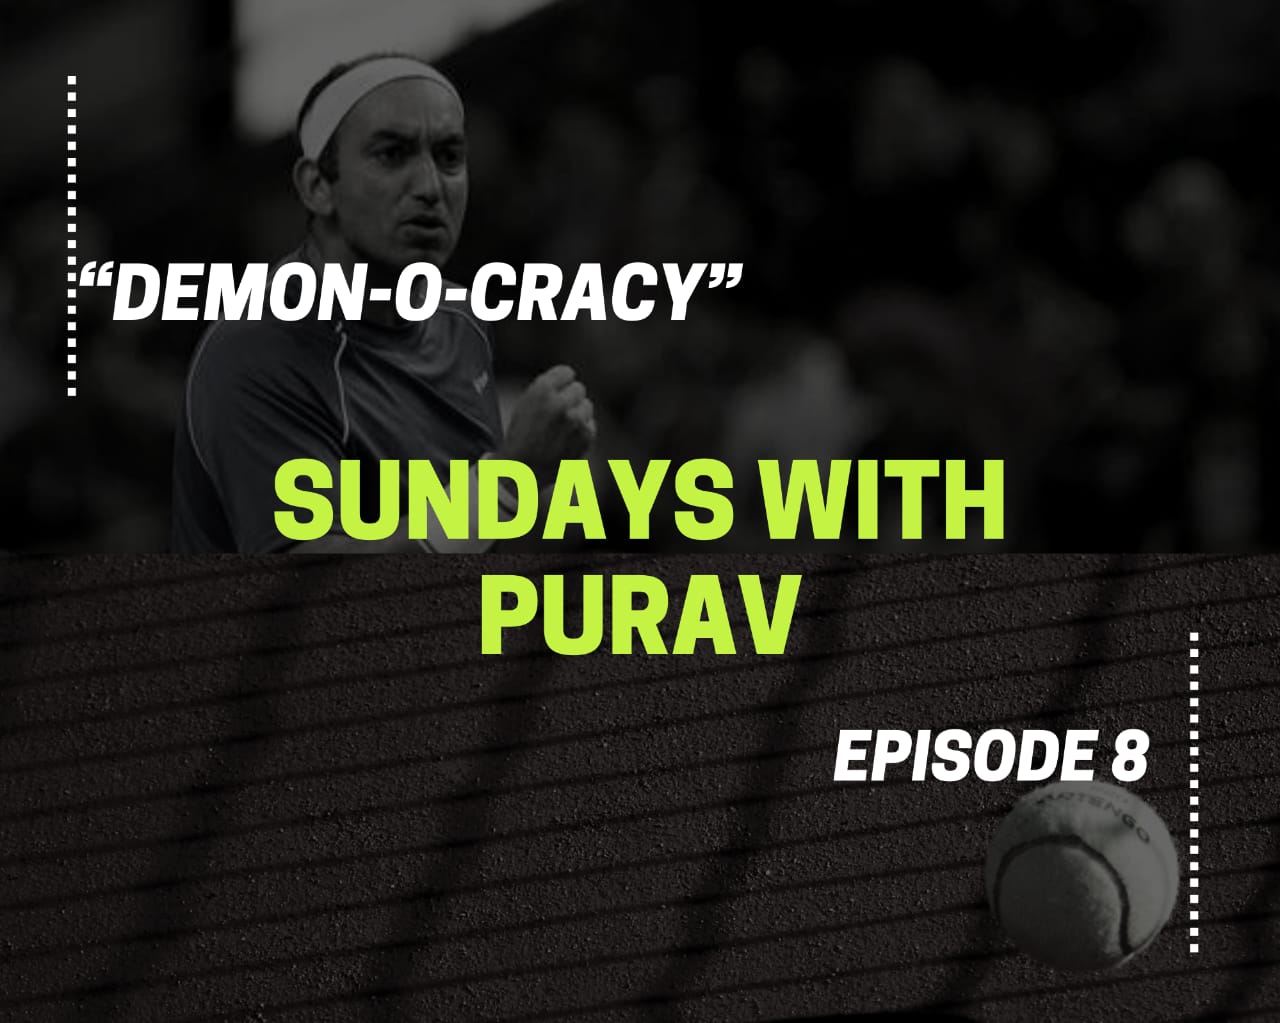 Sundays with Purav : Episode 8 – “Demon-o-cracy”